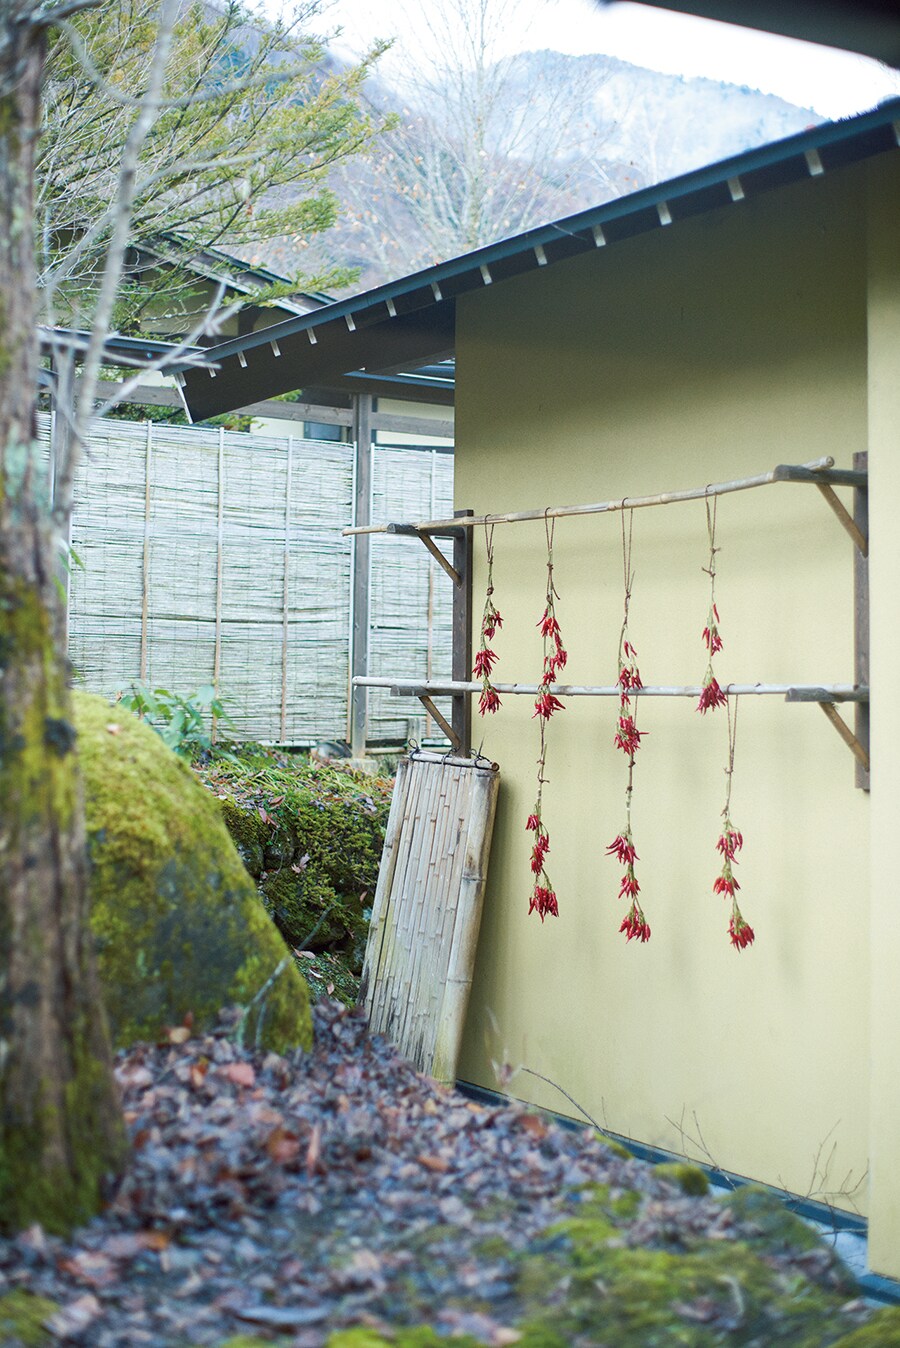 【いろりの宿 かつら木の郷】軒先に唐辛子が干された素朴な光景も。Photo: Masahiro Sanbe